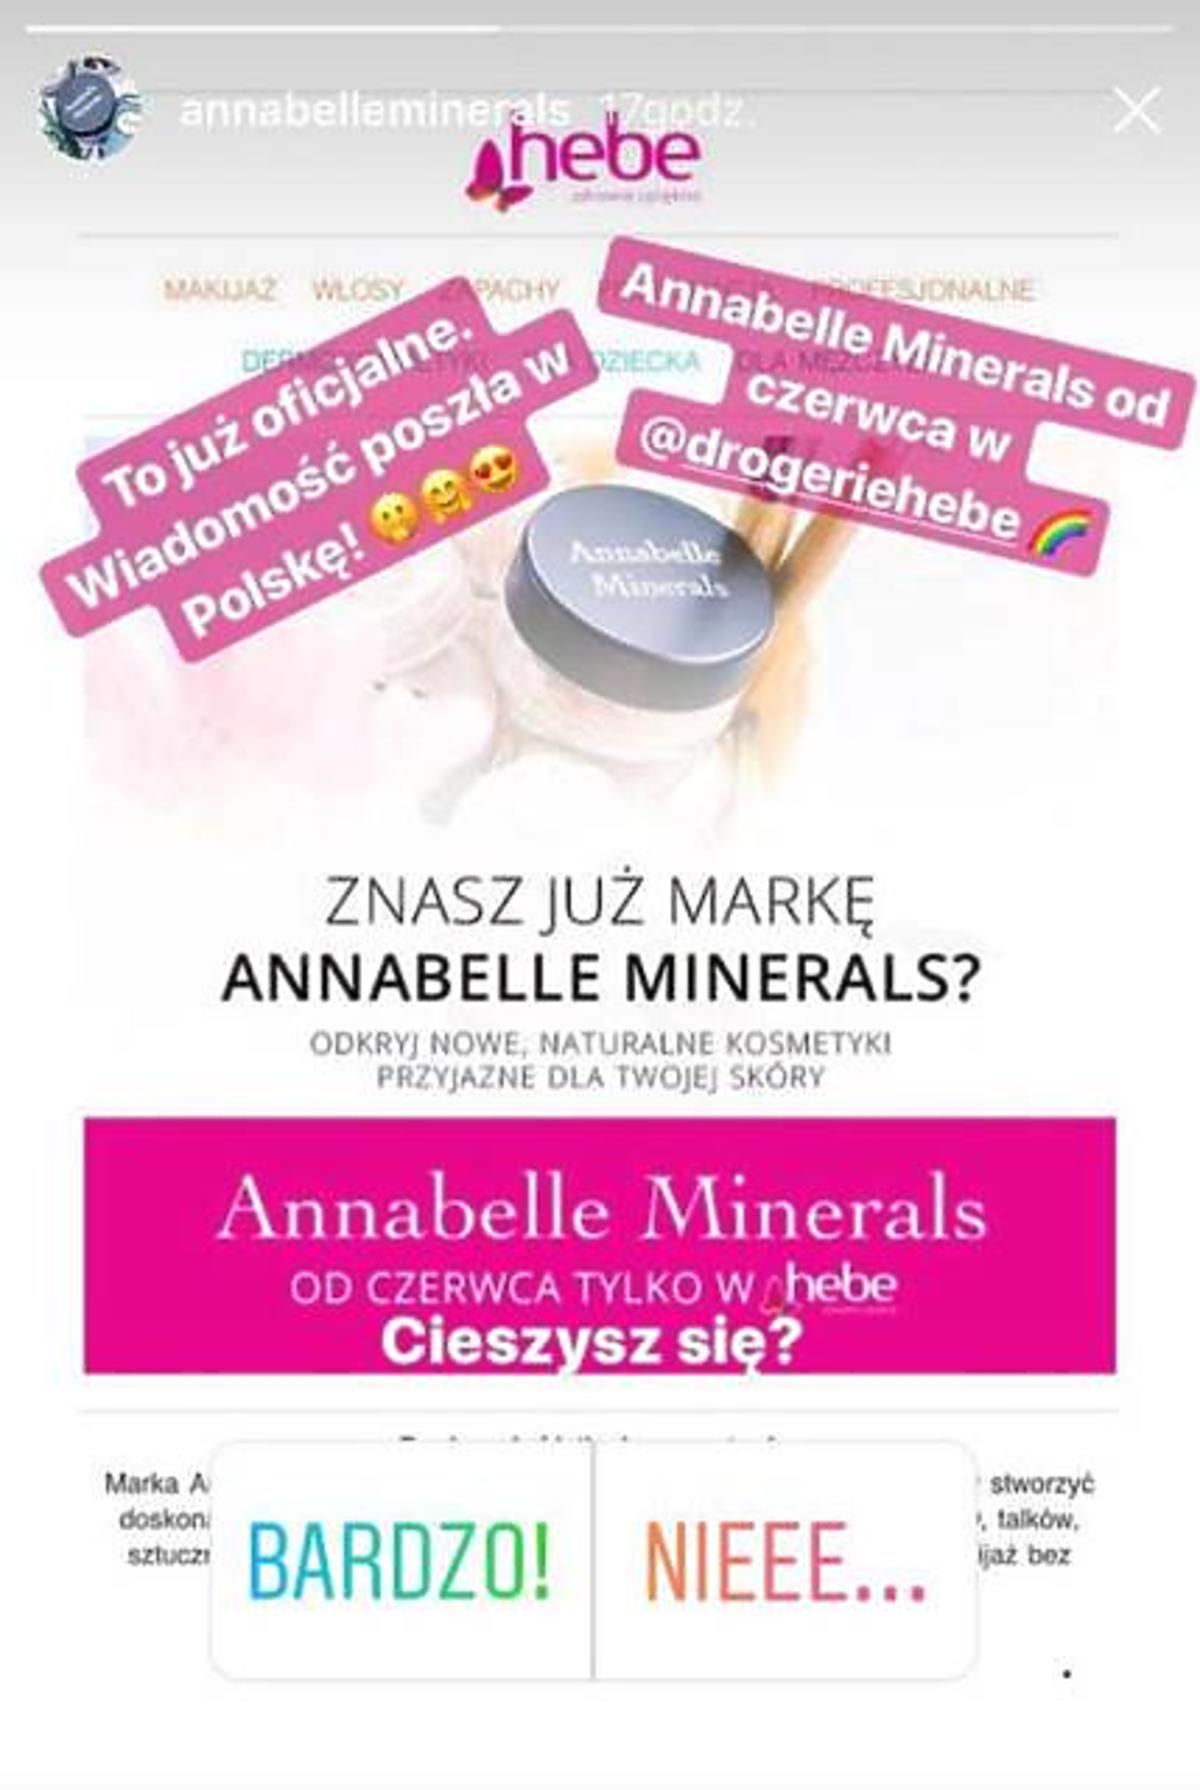 annabelle minerals w hebe